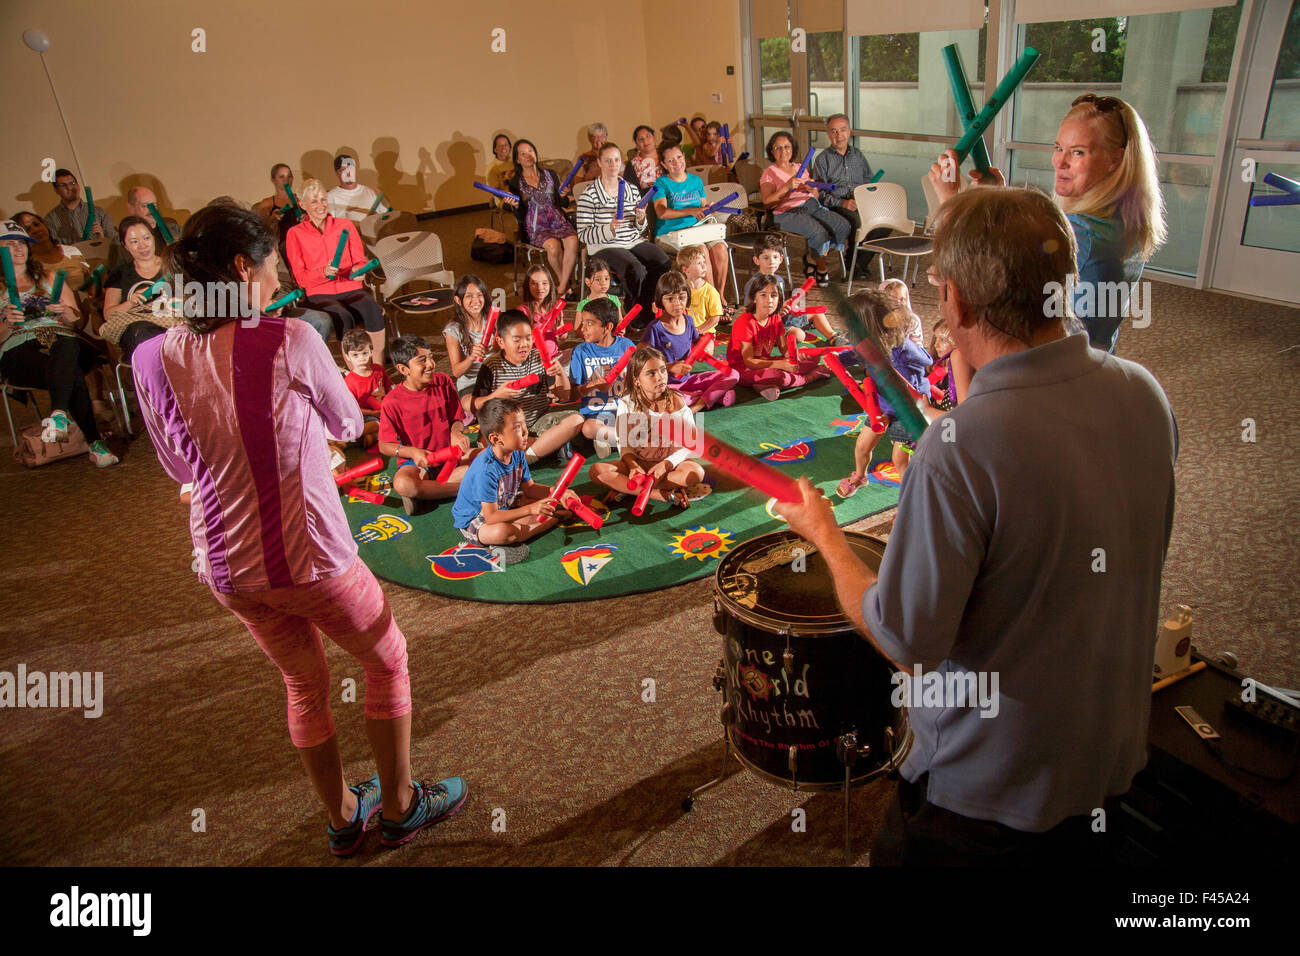 Eine multirassische Kinder Rhythm Band spielt tuned Percussion Röhren Boomwhackers am Laguna Niguel, CA, Stadtbibliothek Mehrzweckraum aufgerufen. Beachten Sie die Eltern im Hintergrund. Hinweis Erwachsenen Marktführer im Vordergrund Stockfoto